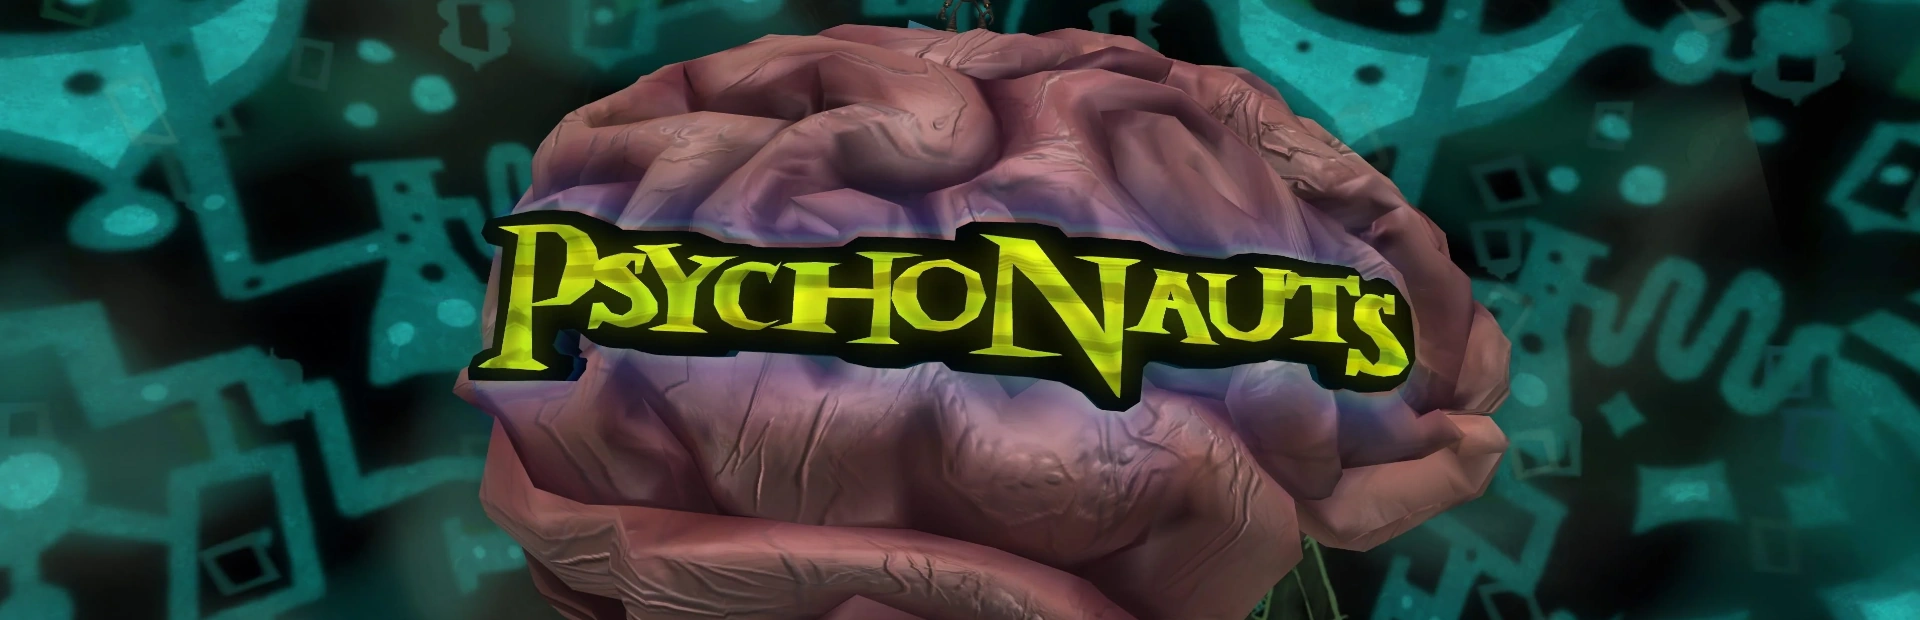 دانلود بازی Psychonauts برای کامپیوتر | گیمباتو 